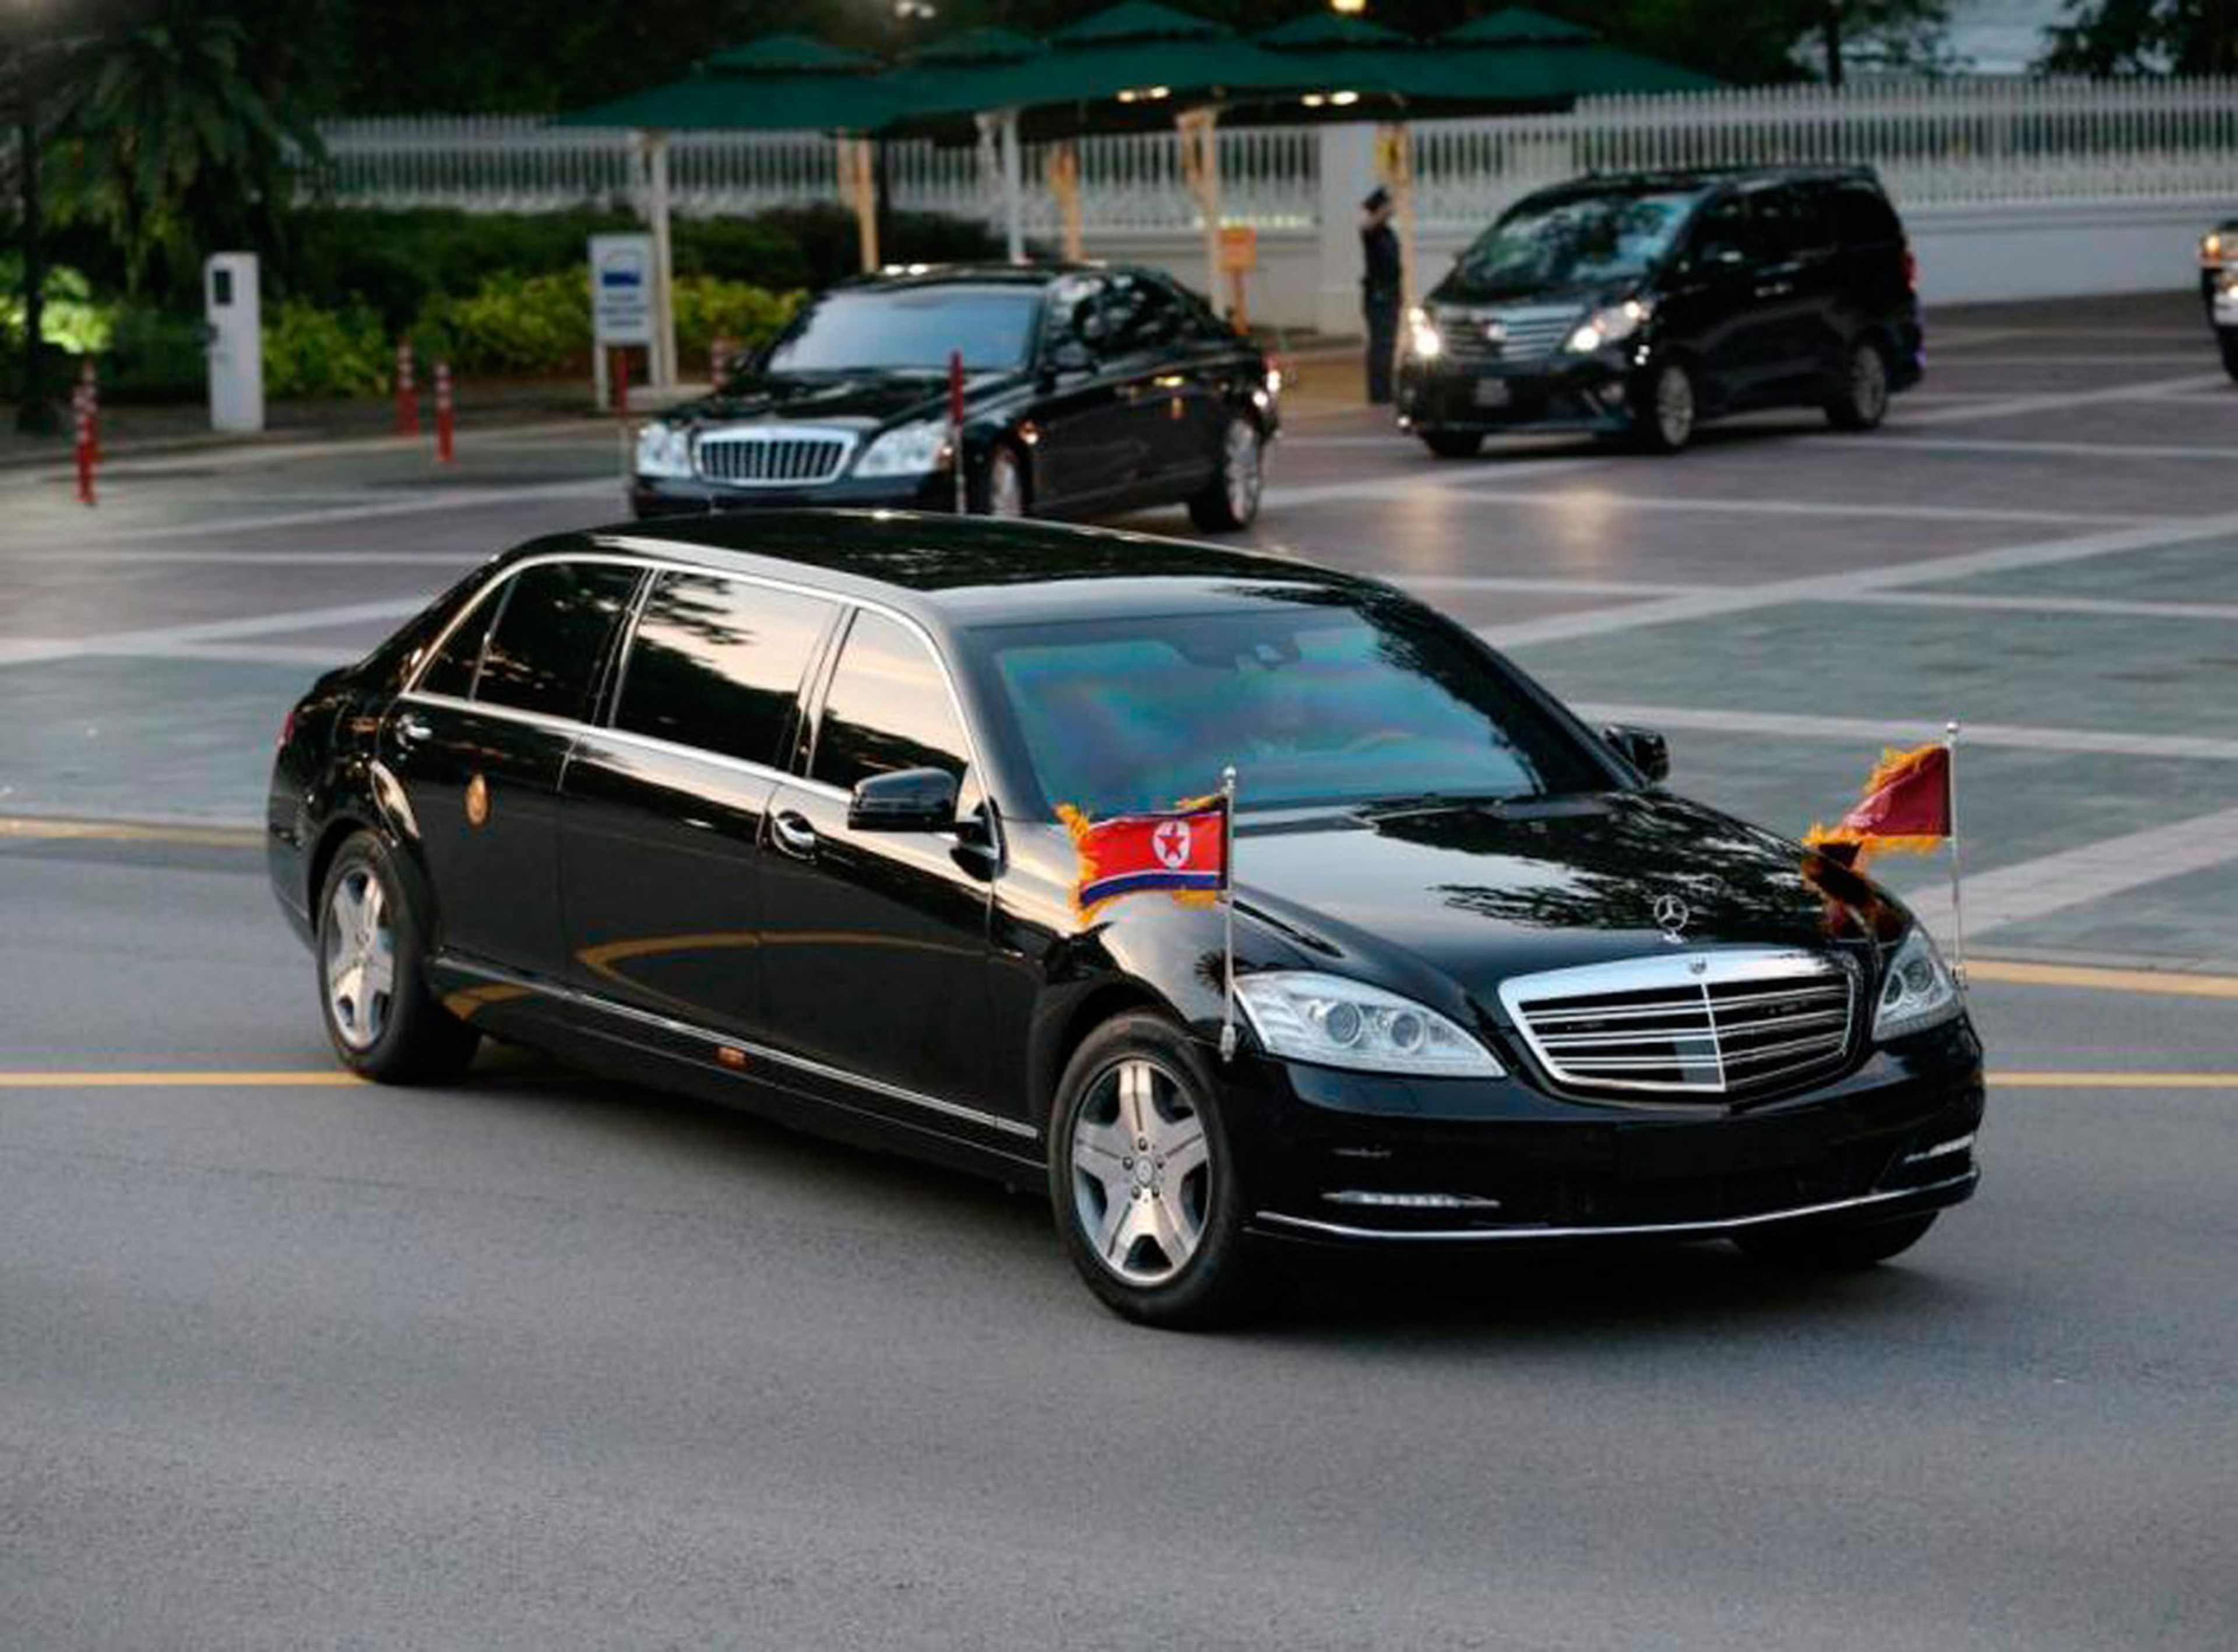 El Mercedes blindado de 1 millón de dólares en el que Kim Jong Un acudió a la cumbre con Trump